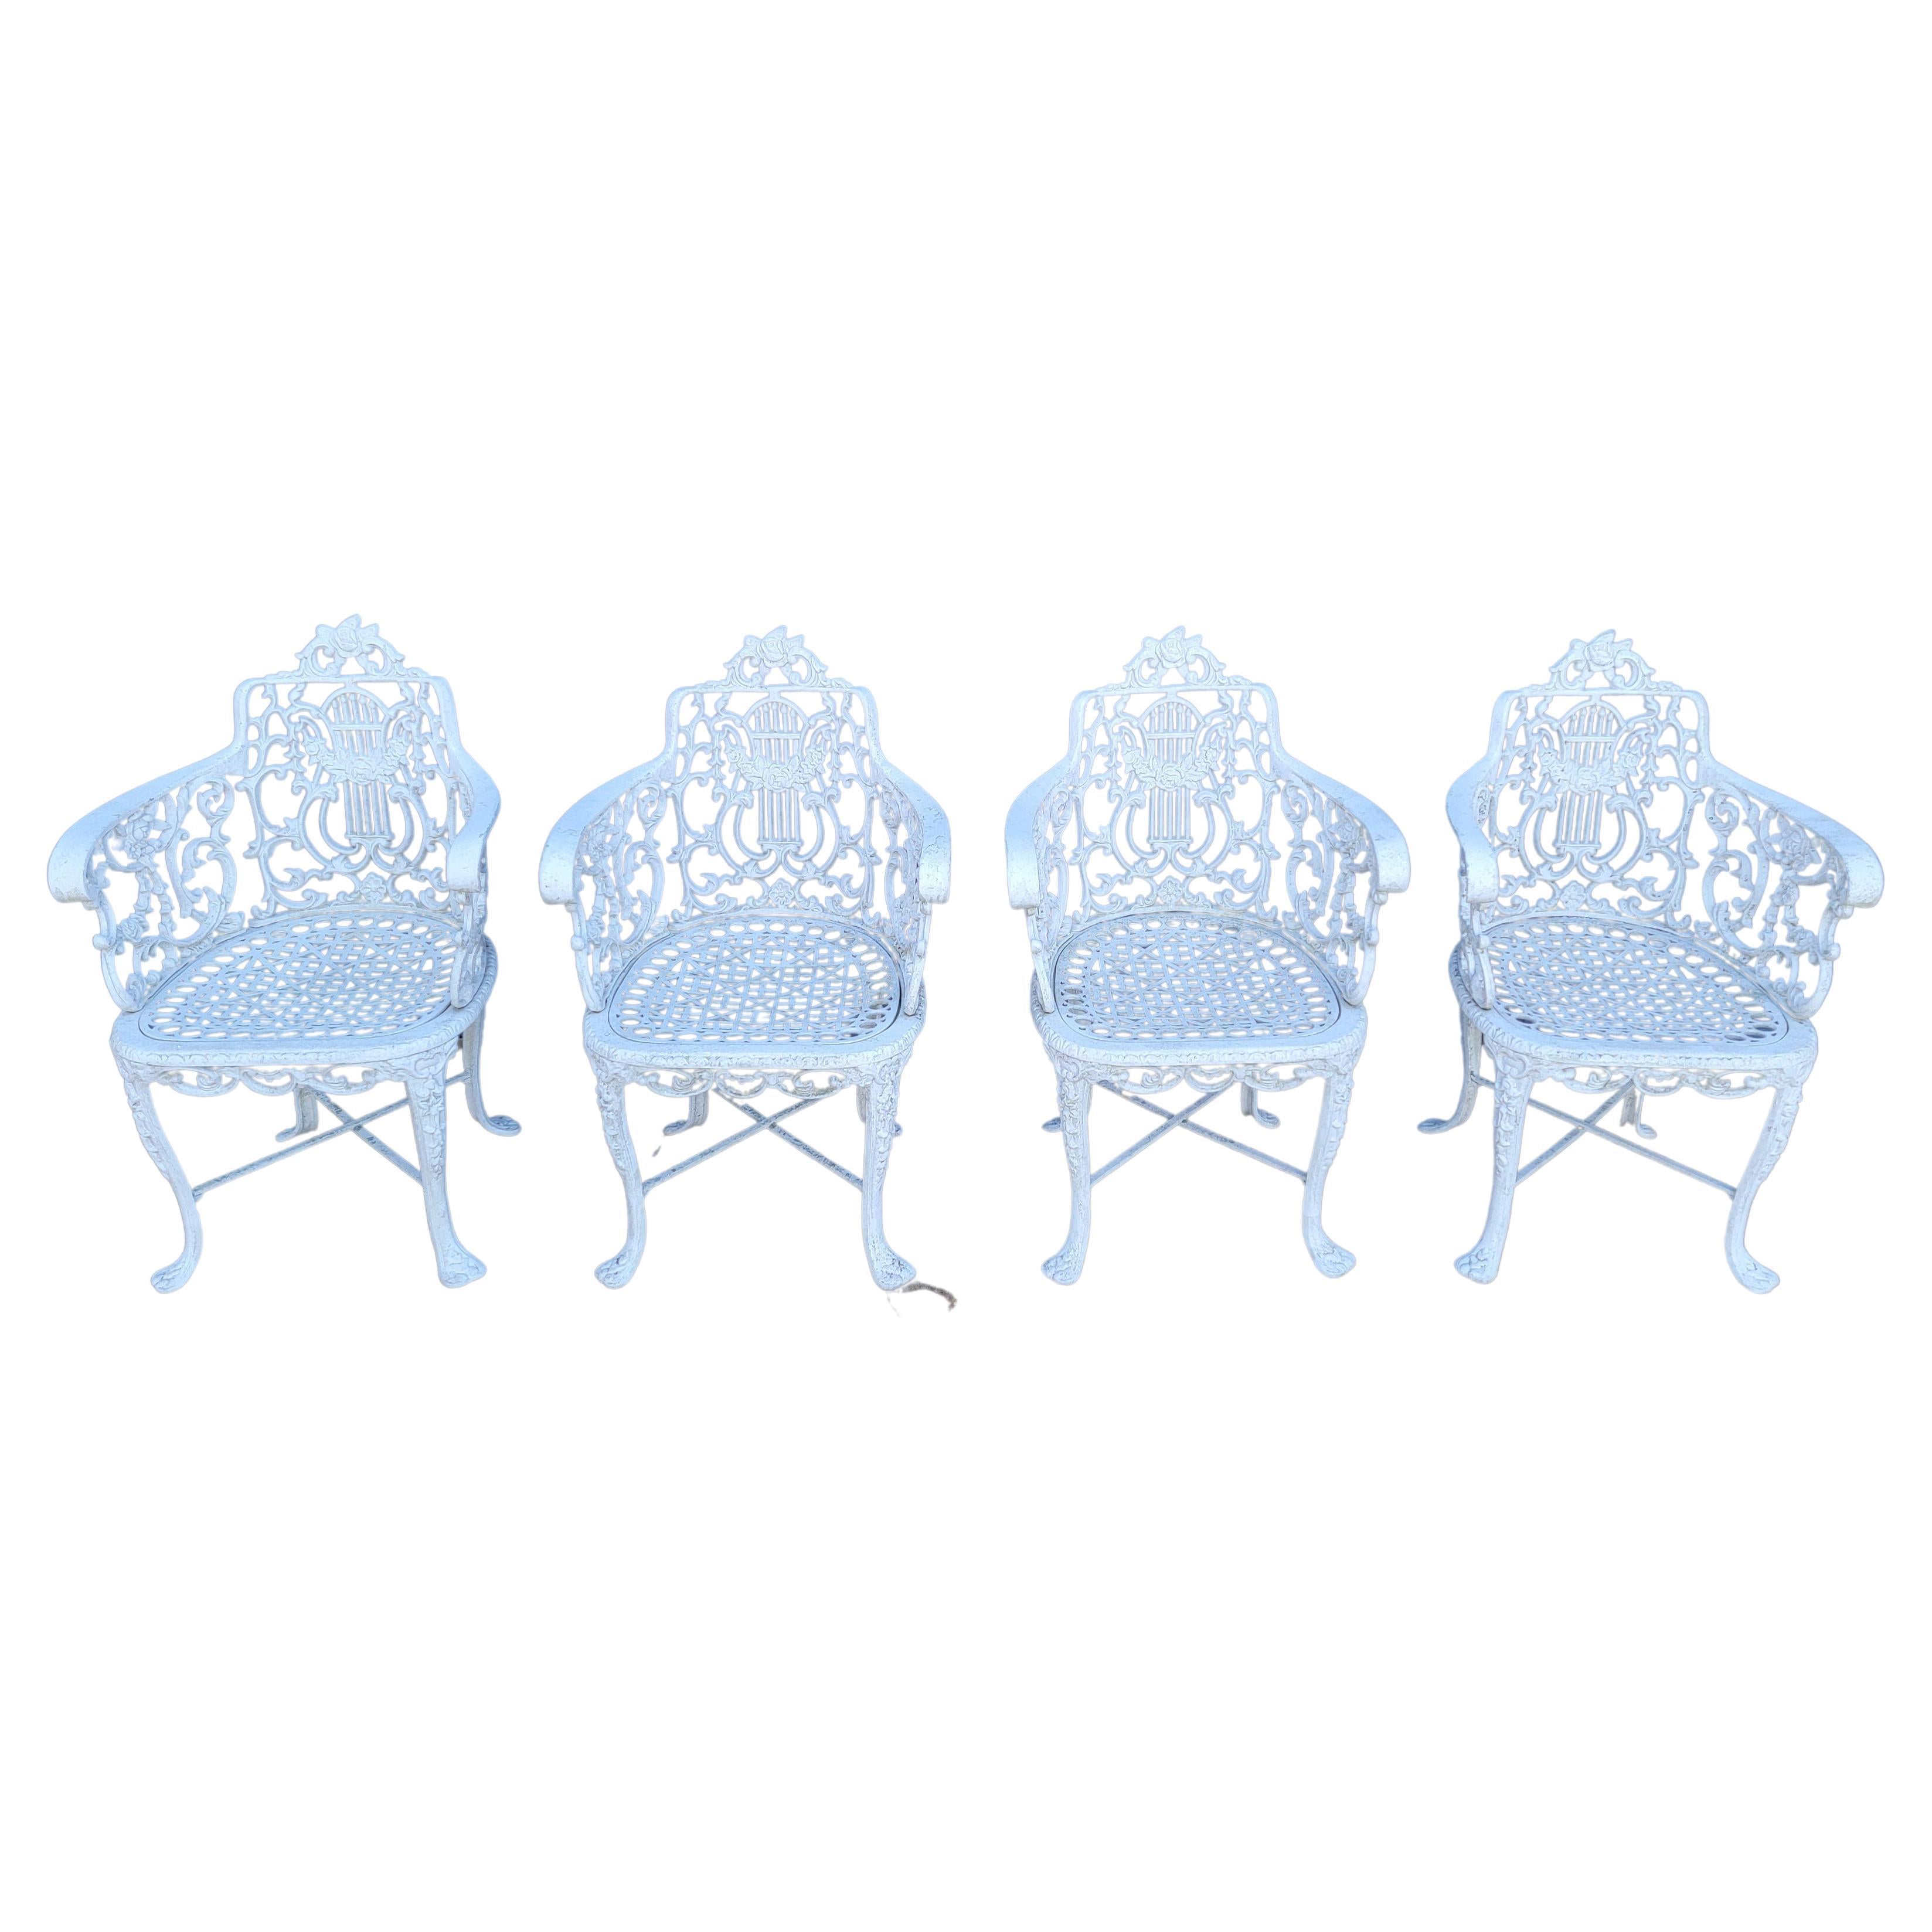 Garden Chairs Manner of Robert Wood Set 4